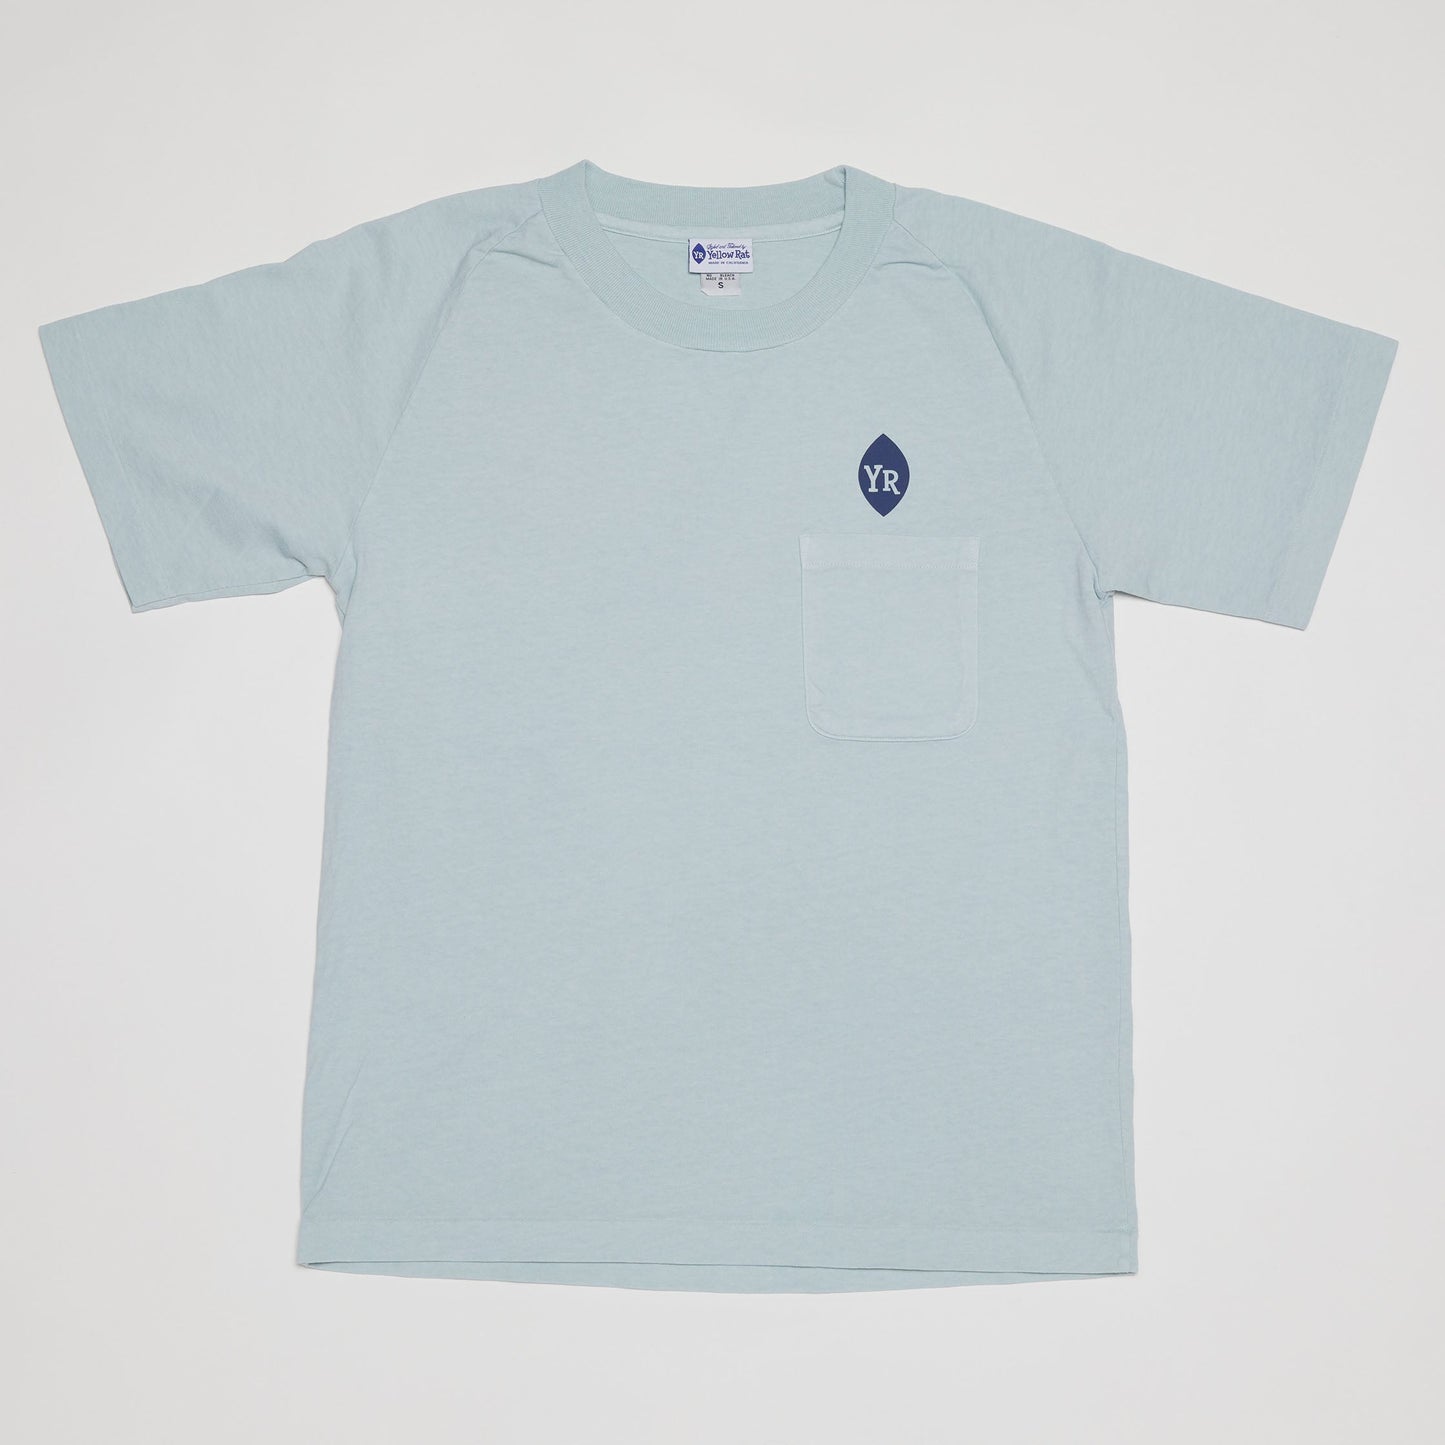 YR Flower T-Shirt (Dusty Blue)